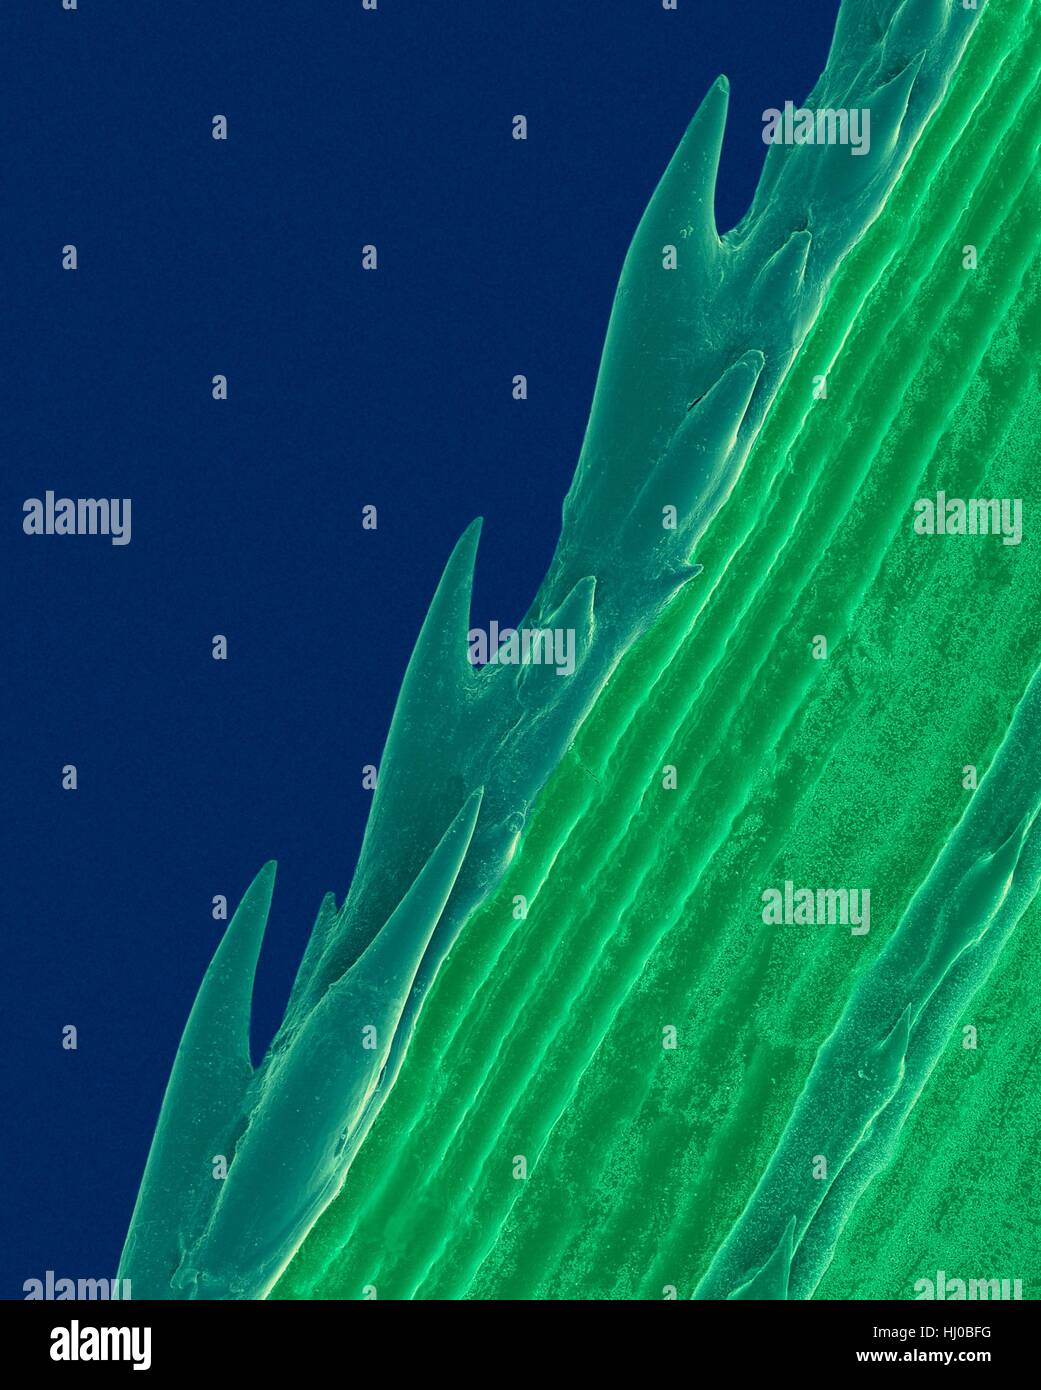 Ein Grashalm mit Wellenschliff (Paspalum sp), farbige scanning Electron-Schliffbild (SEM). Pflanzen entwickeln spezialisierte chemische Merkmale natürliche Verteidigung gegen Belastungen in ihrer Umgebung. Die scharfe Kante der Sägezahn von Grashalm schützt vor Fraßfeinden. Paspalum ist Stockfoto